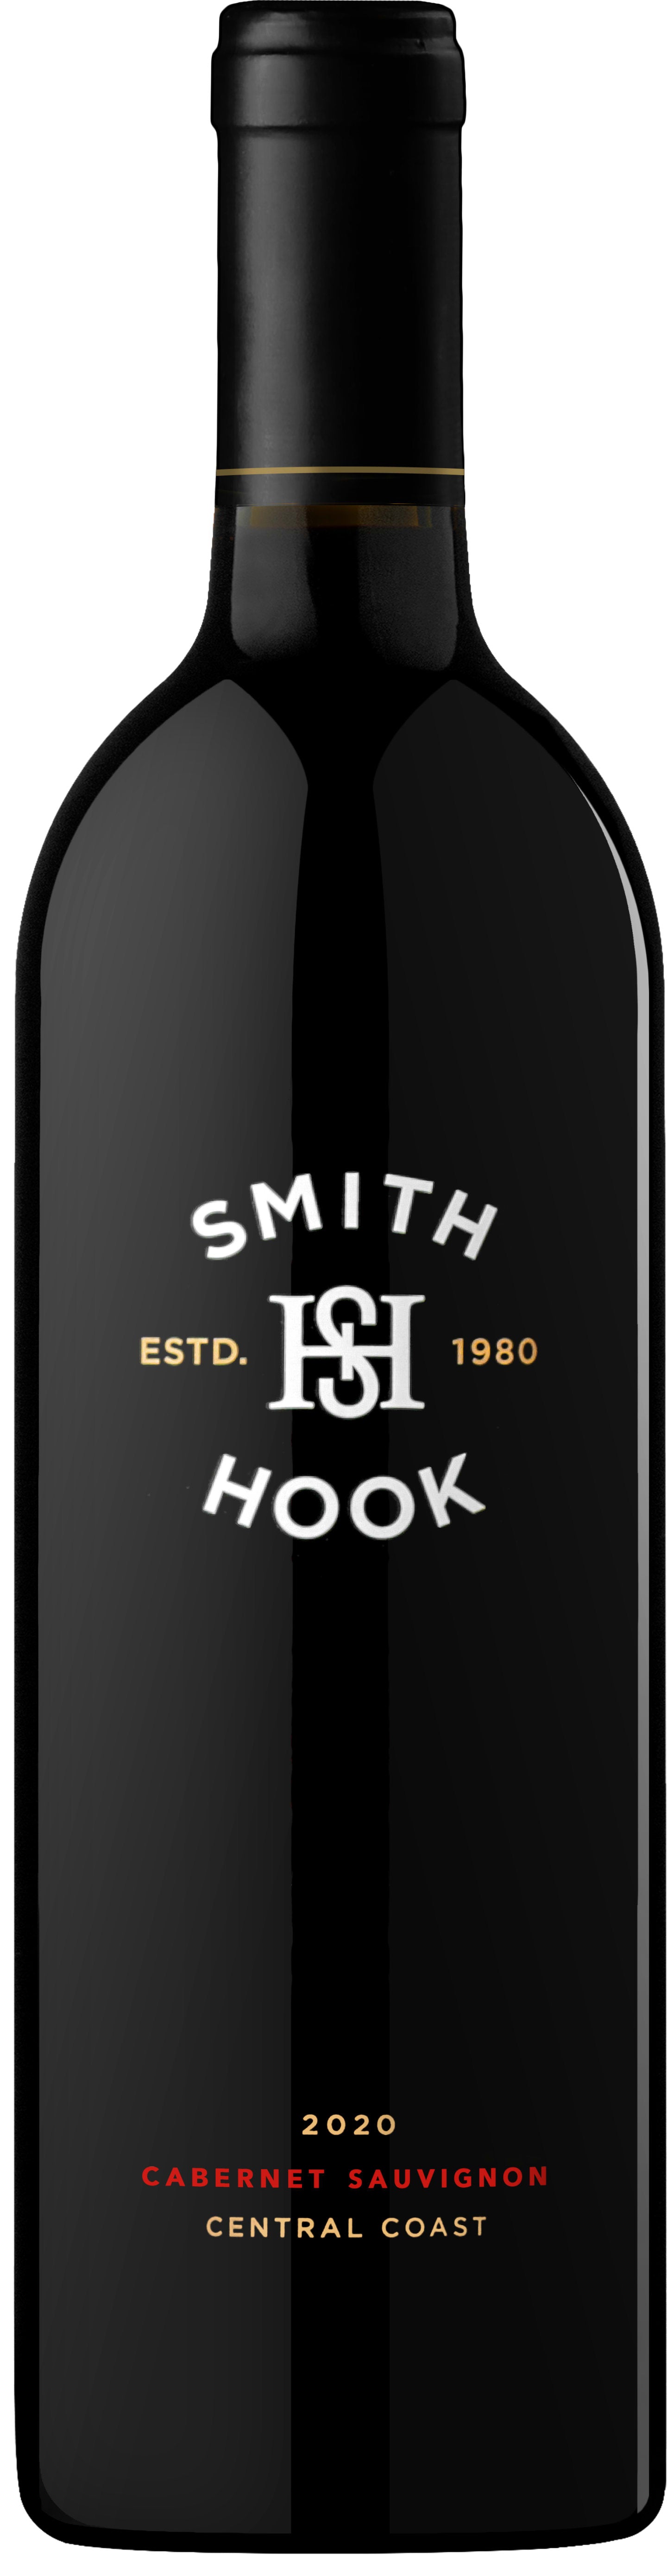 Smith & Hook Cabernet Sauvignon 2020 750ml